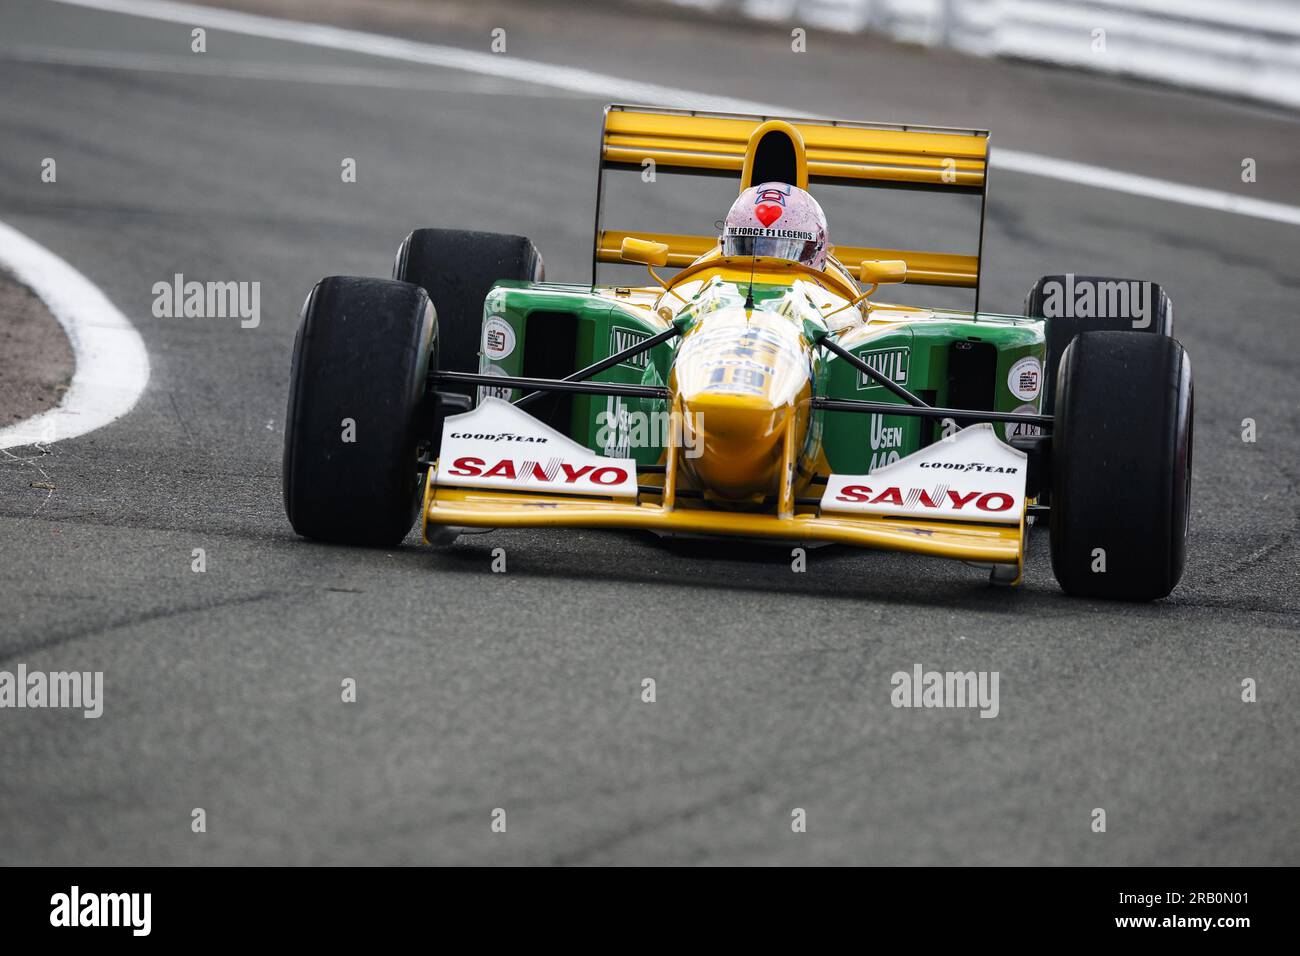 Benetton B193 während des Formel-1-Grand Prix 2023 in Aramco, 10. Runde der Formel-1-Weltmeisterschaft 2023 vom 7. Bis 9. Juli 2023 auf dem Silverstone Circuit in Silverstone, Großbritannien Stockfoto